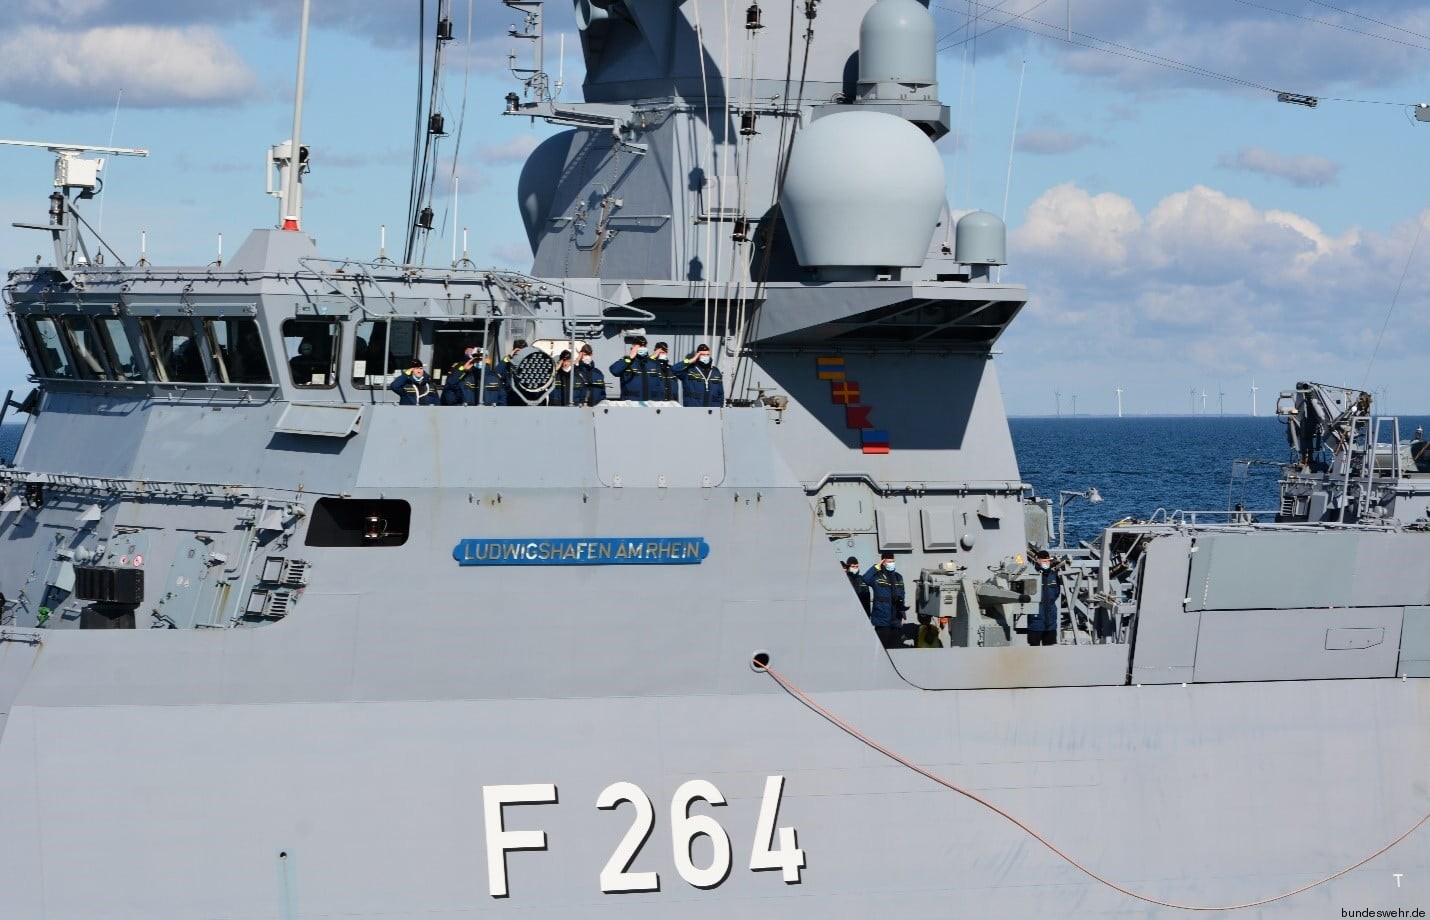 f-264 fgs ludwigshafen am rhein type k130 braunschweig class corvette german navy deutsche marine korvette 21